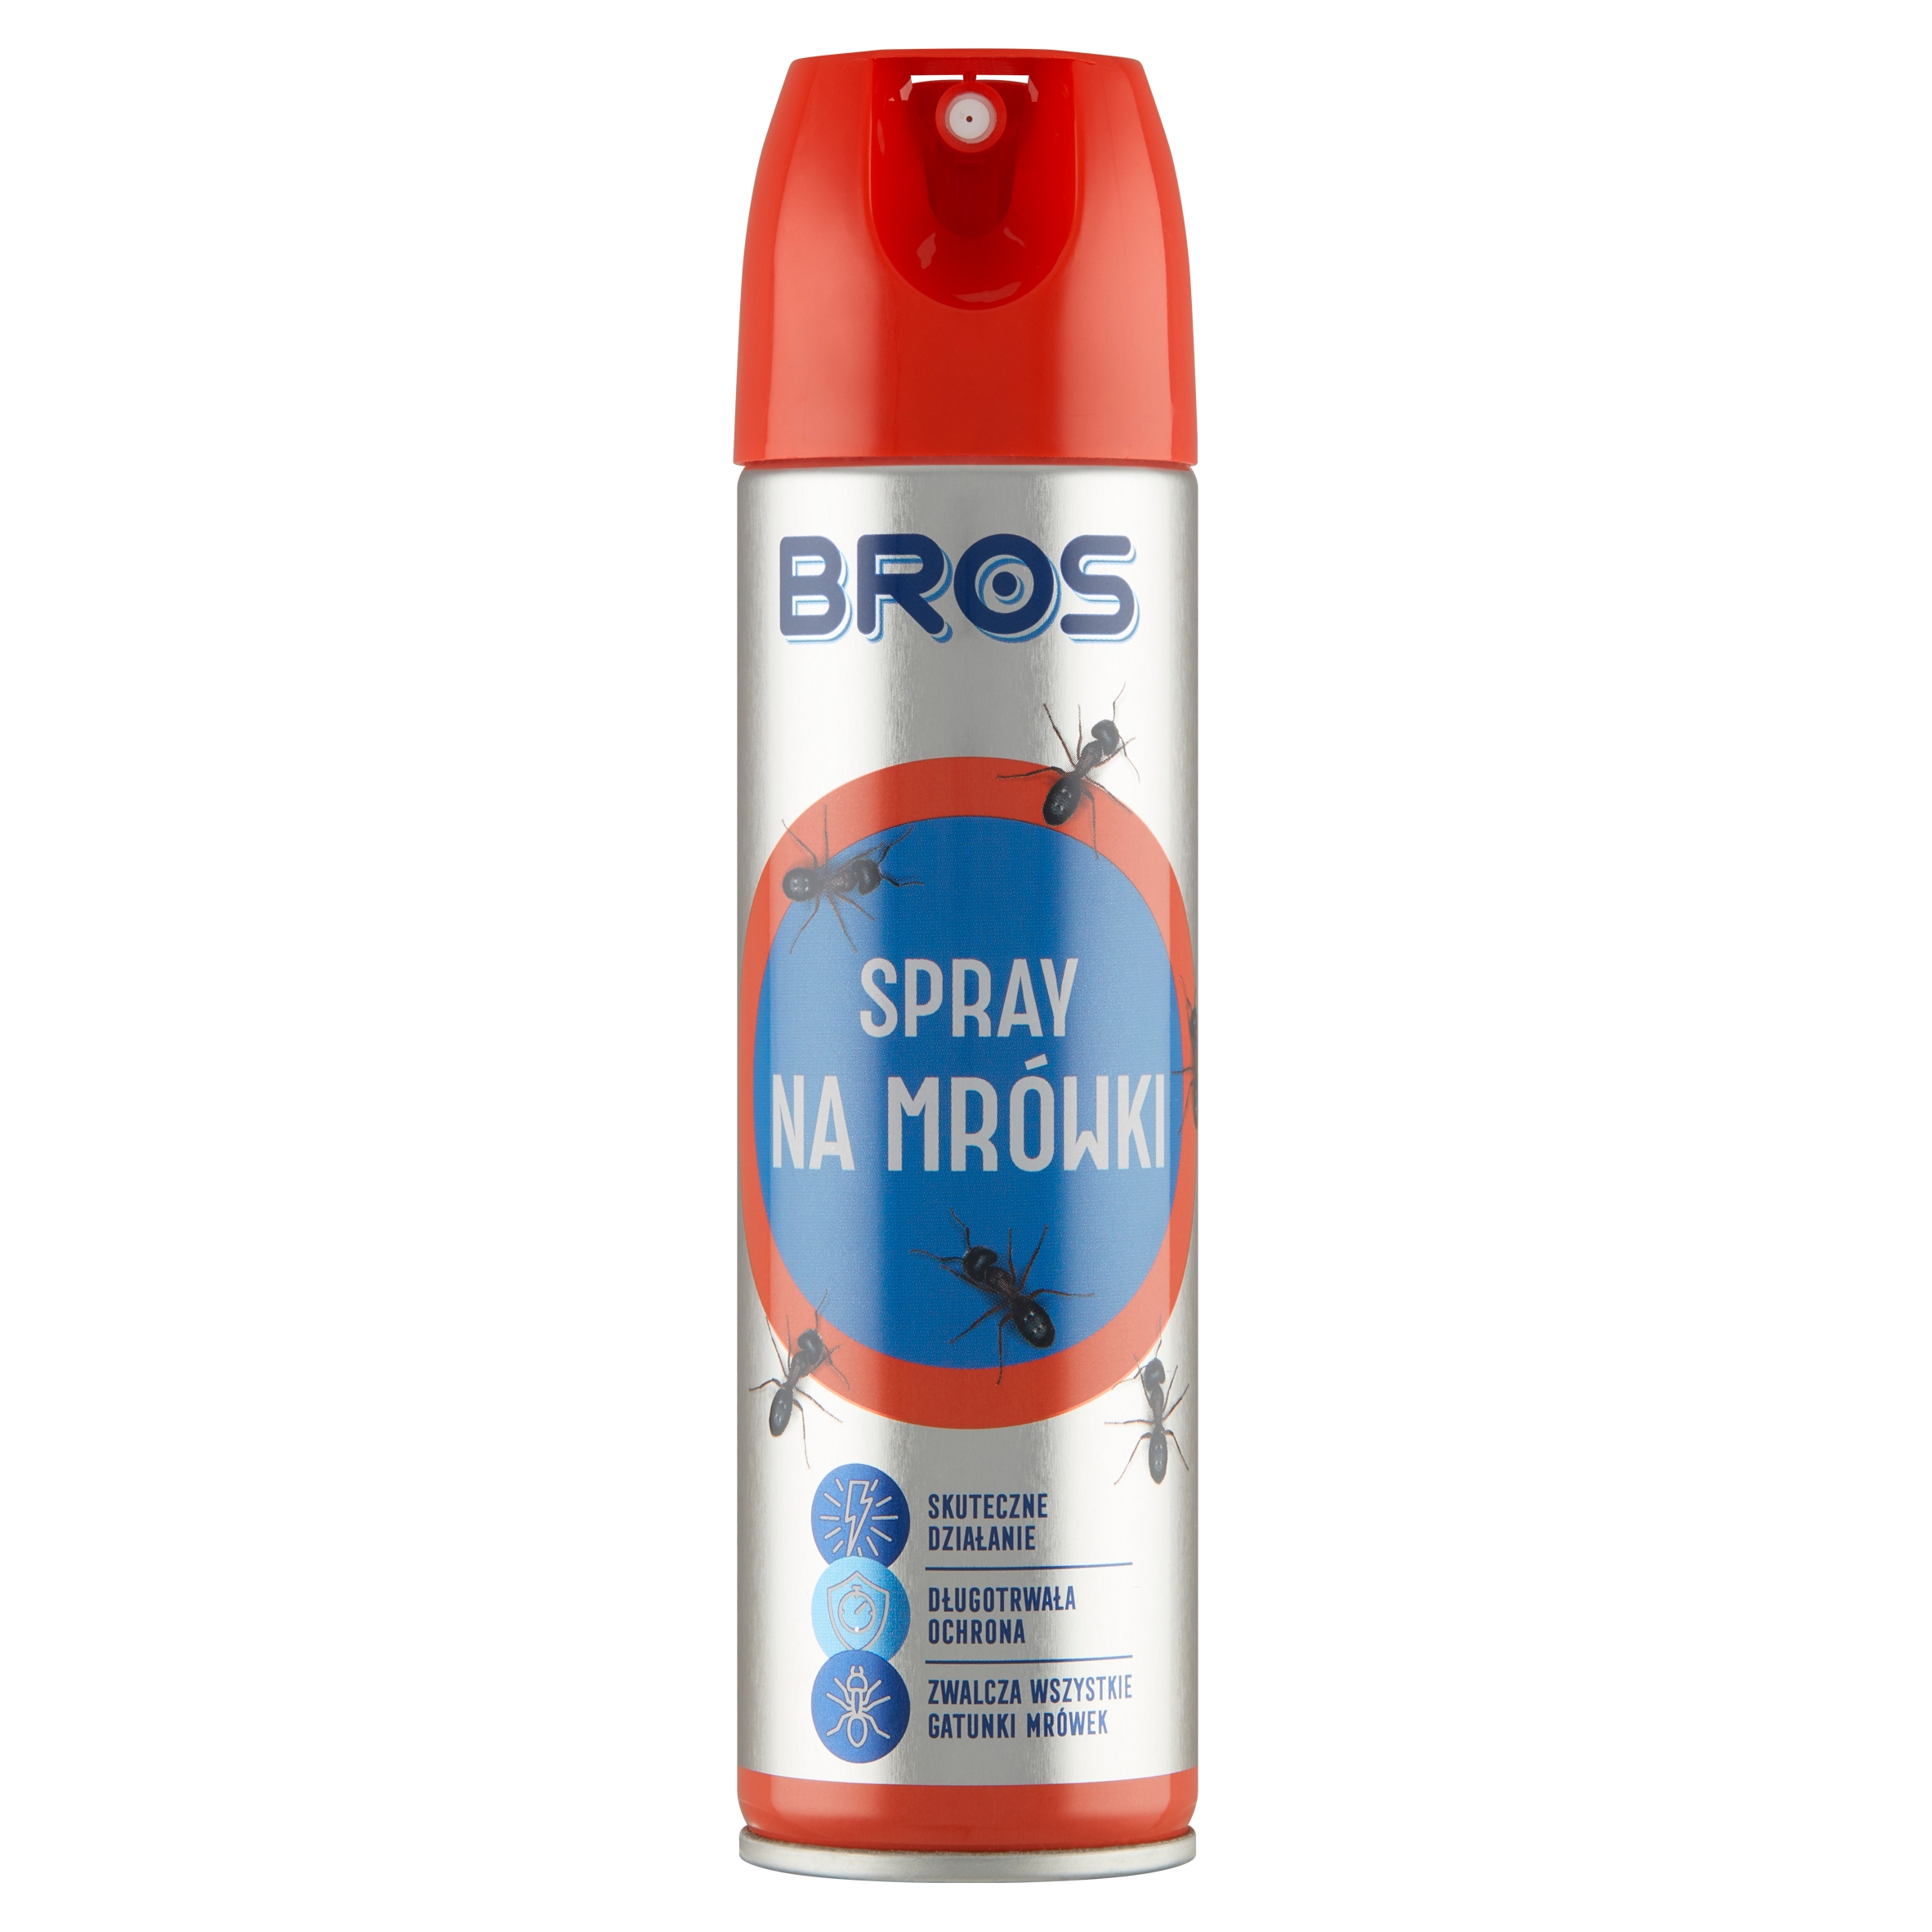 

Bros Spray na mrówki 150ml